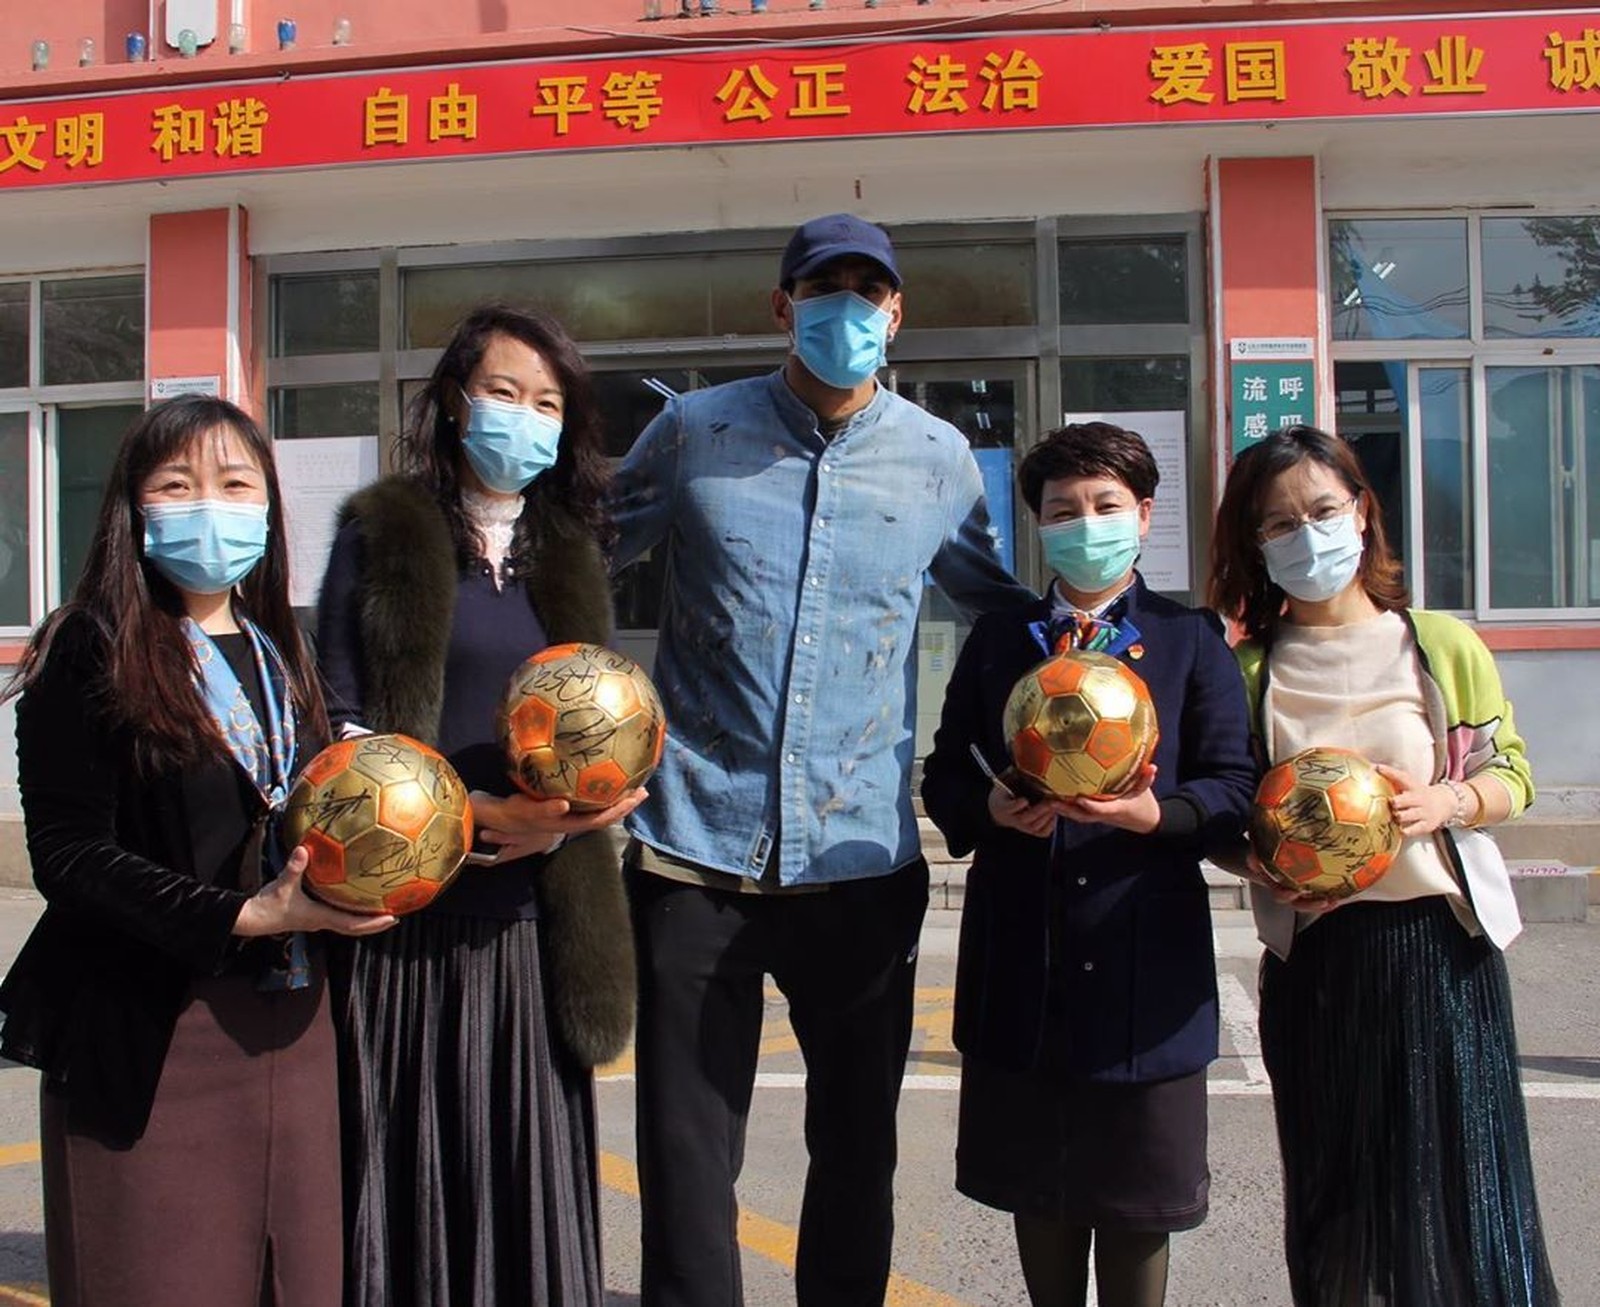 O jogador belga Marouane Fellaini, do Shandong Luneng, ficou internado por três semanas e recebeu alta após ter sido contaminado com coronavírus.